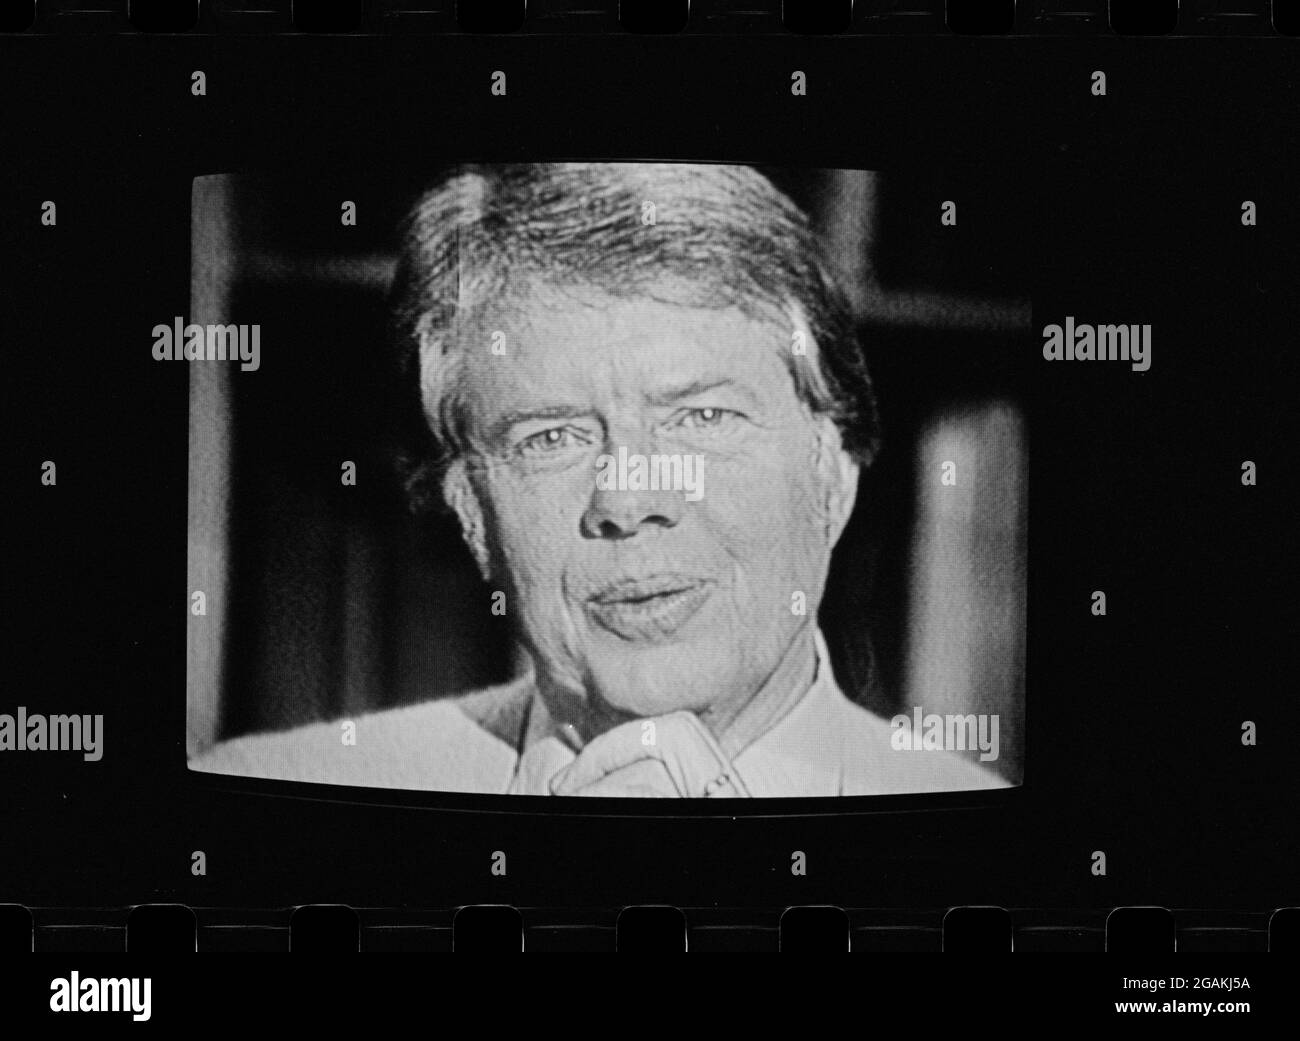 Le président Jimmy carter, lorsqu'il est apparu à la télévision lors de sa première discussion au coin du feu à la Maison Blanche, Washington, DC, 2/2/1977. (Photo de Marion S Trikosko/US News & World Report Collection/RBM Vintage Images) Banque D'Images